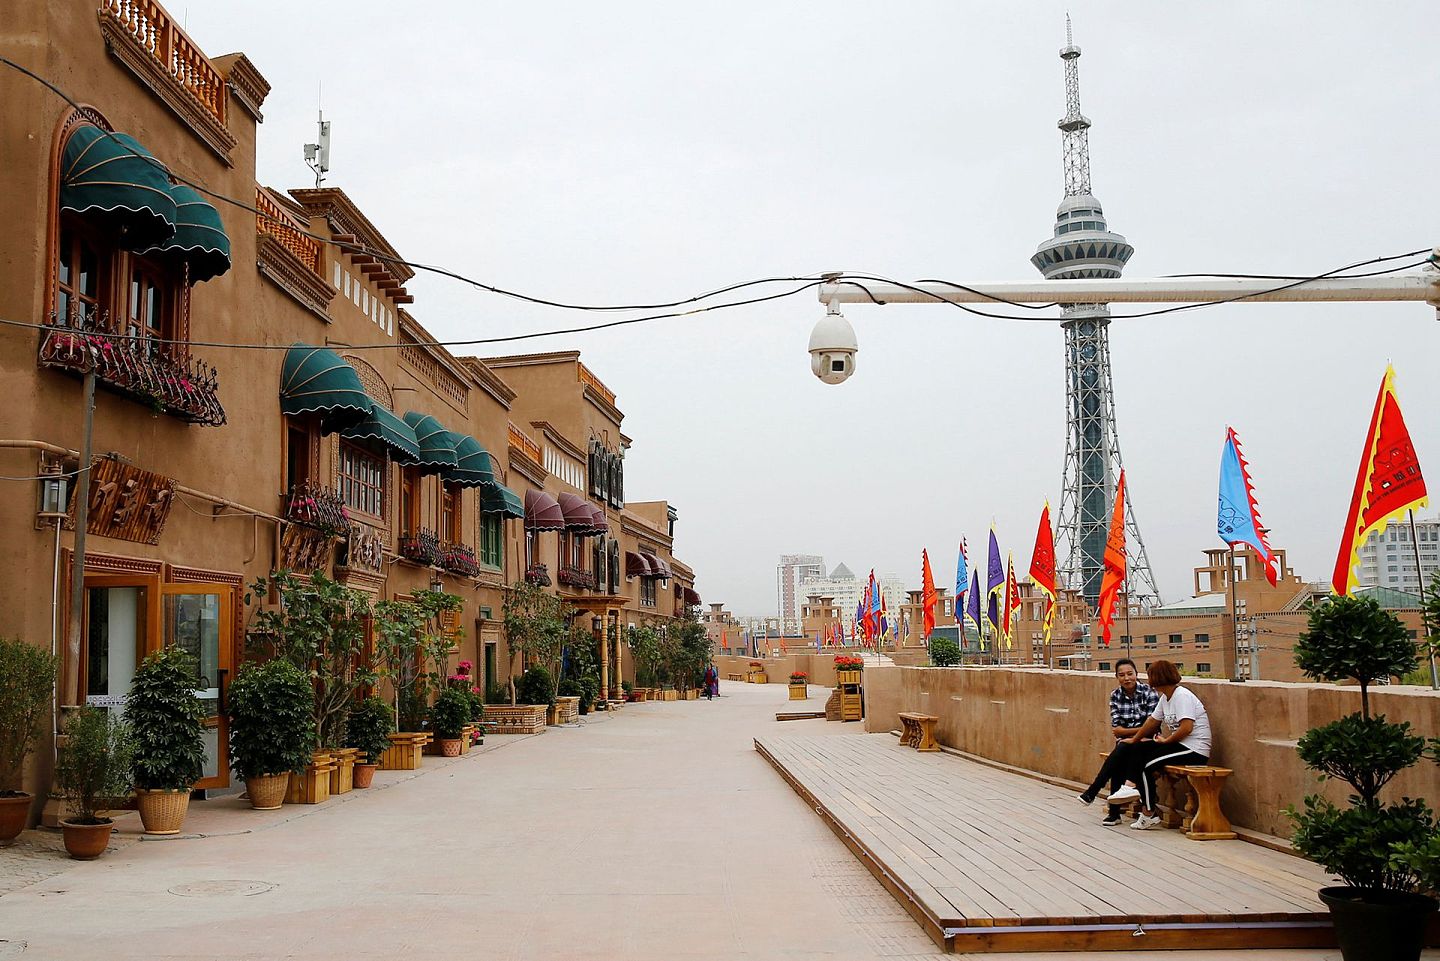 2018年9月6日，在中国新疆维吾尔族自治区喀什，一个安全摄像头被安置在古城改造后的区域。这引起西方浓墨重彩的批评，可类似摄像头在整个中国的大小城市司空见惯。（REUTERS）